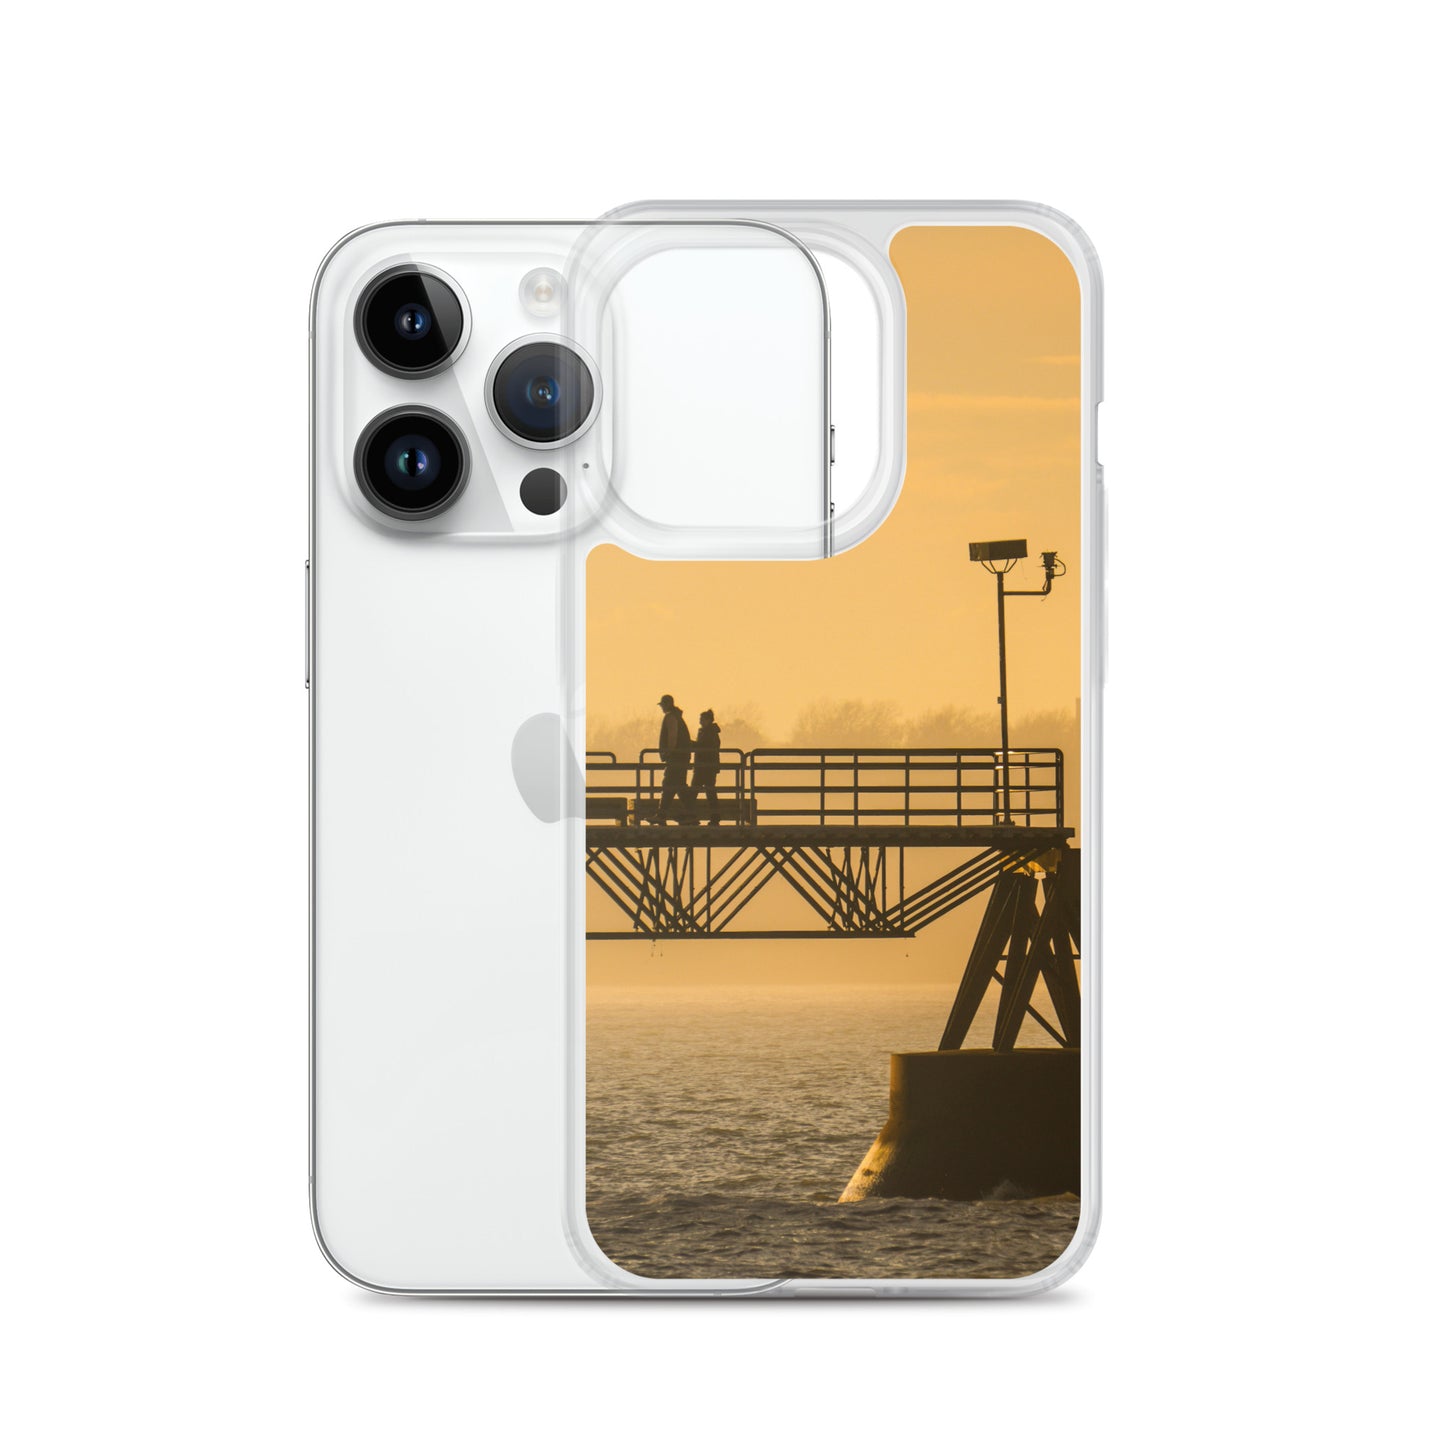 Scenic Pier iPhone Case